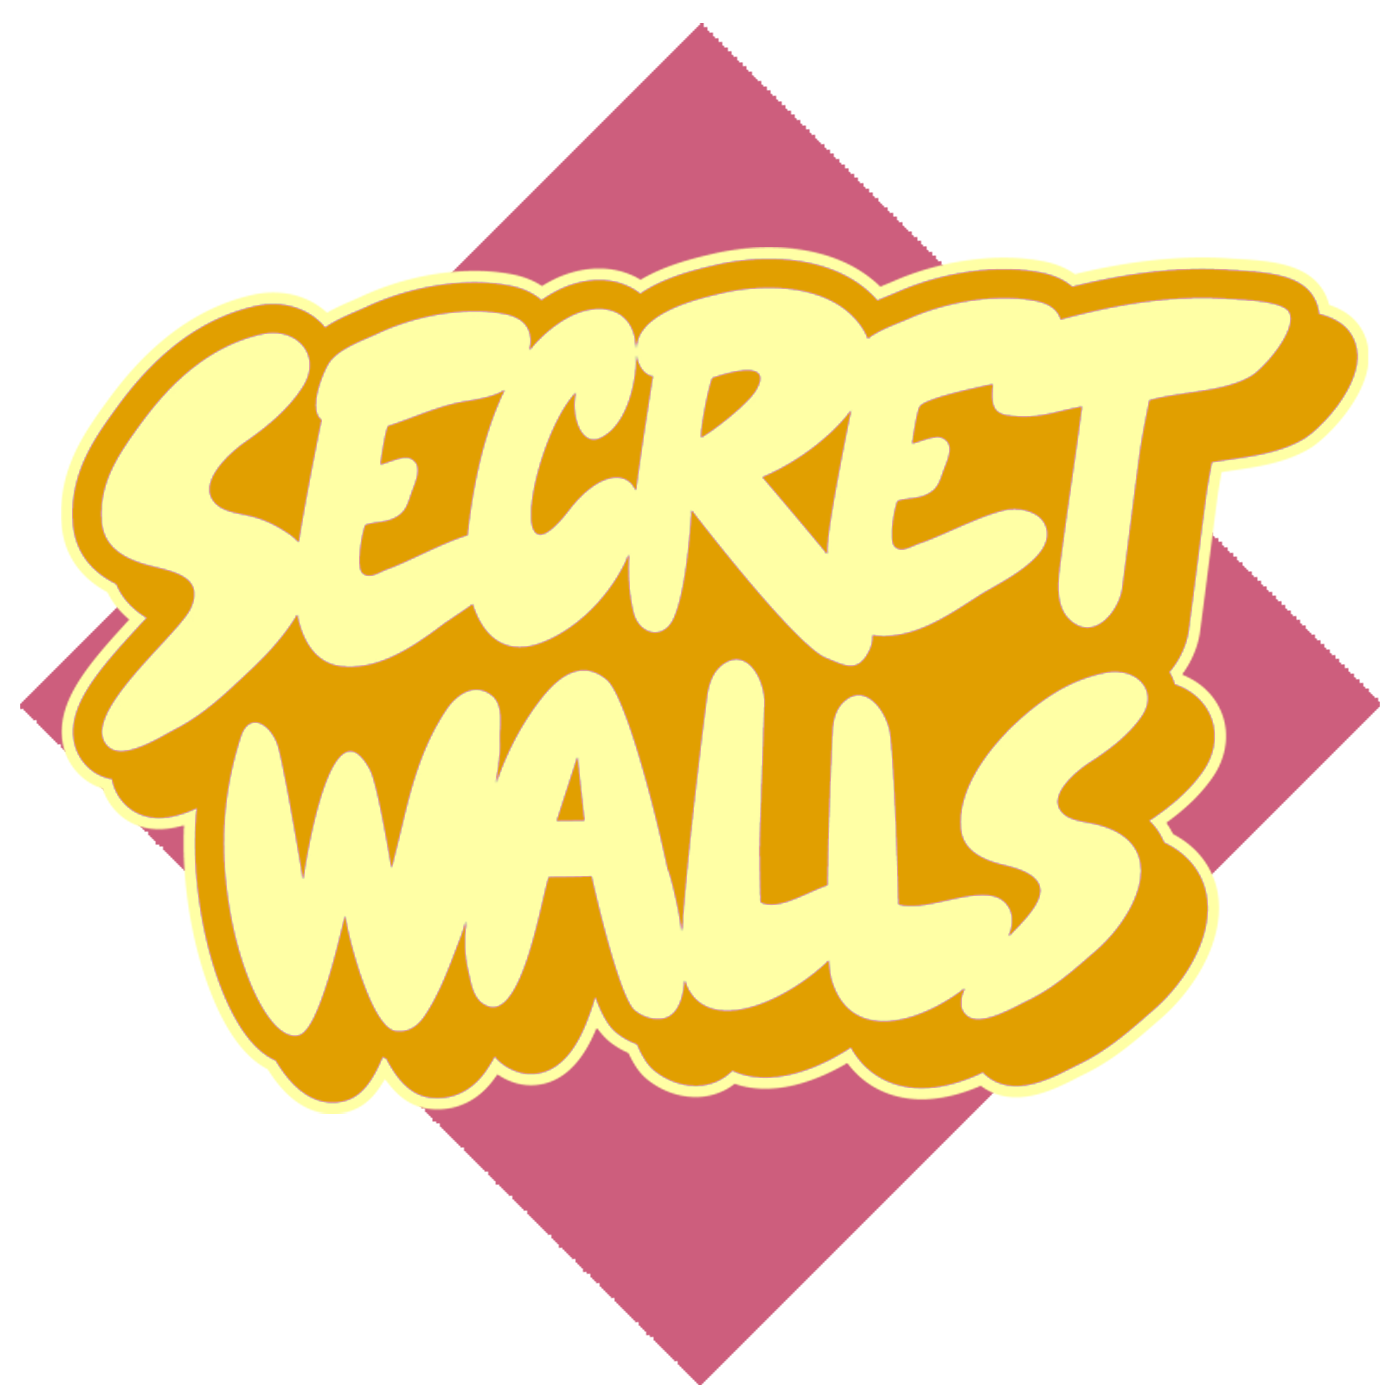 @secretwalls | 83k